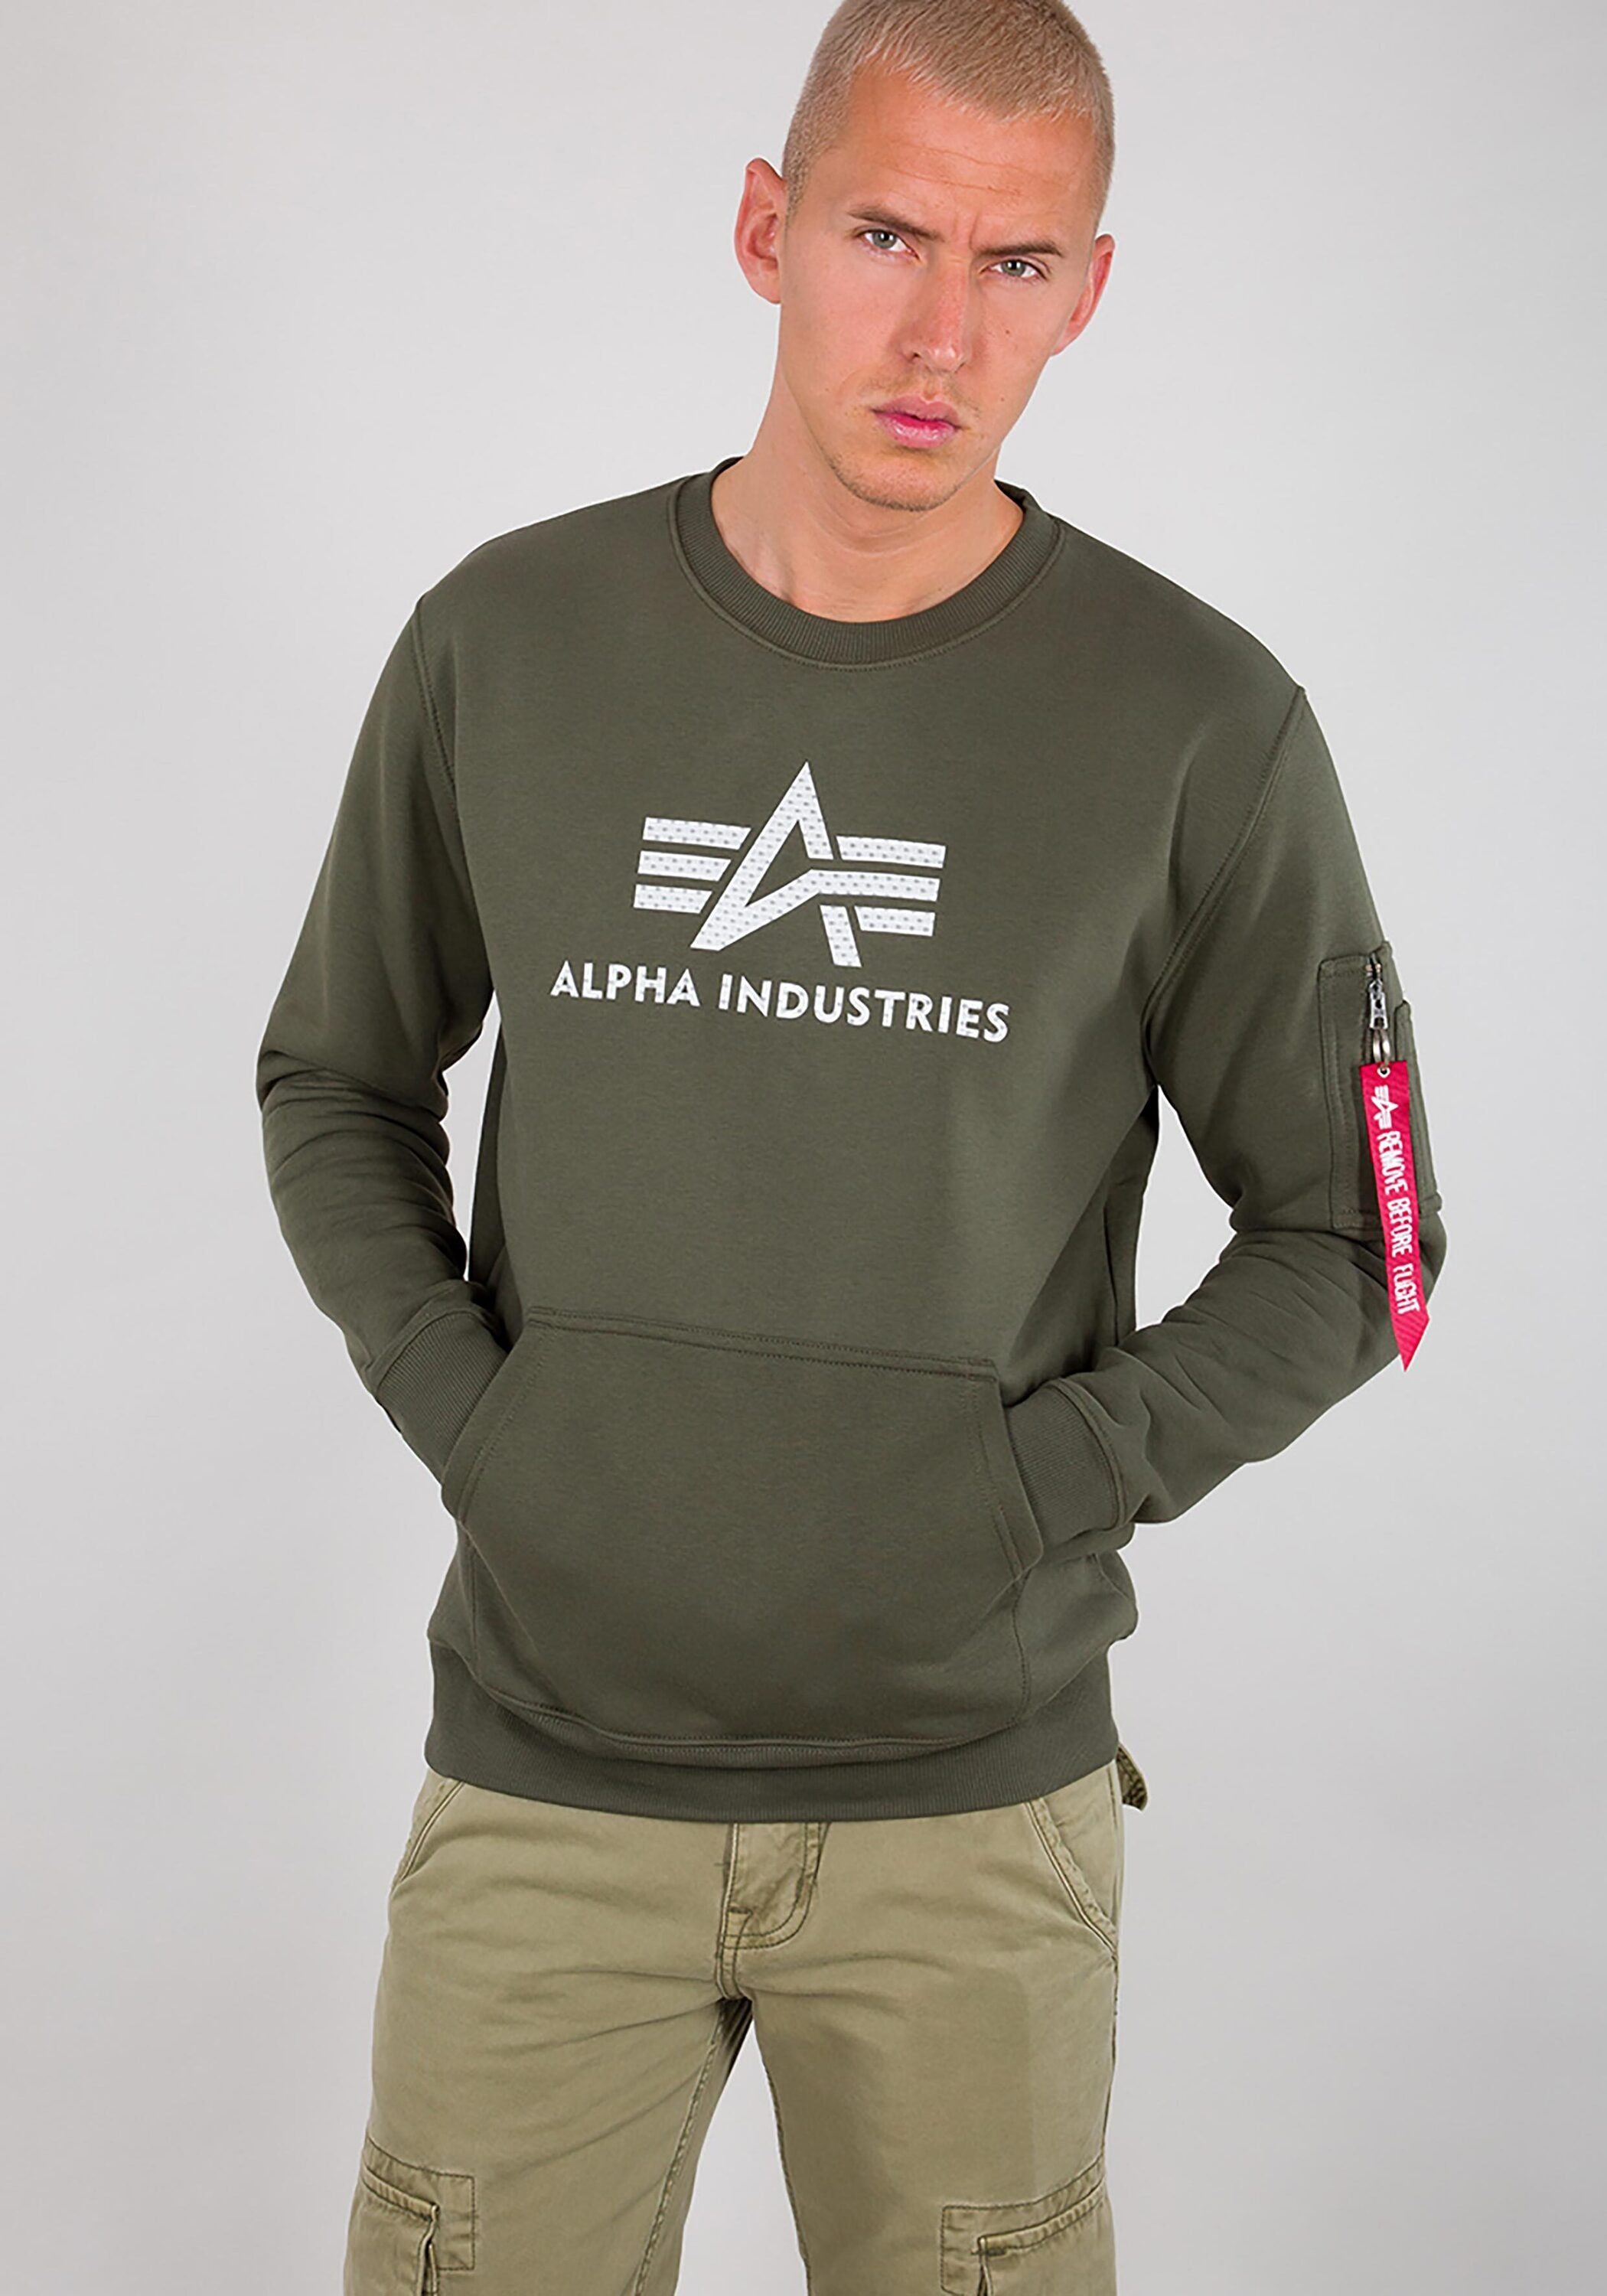 Spitzenreiter Alpha Industries Alpha Men dark Sweater olive Sweater - 3D Logo Industries Sweatshirts